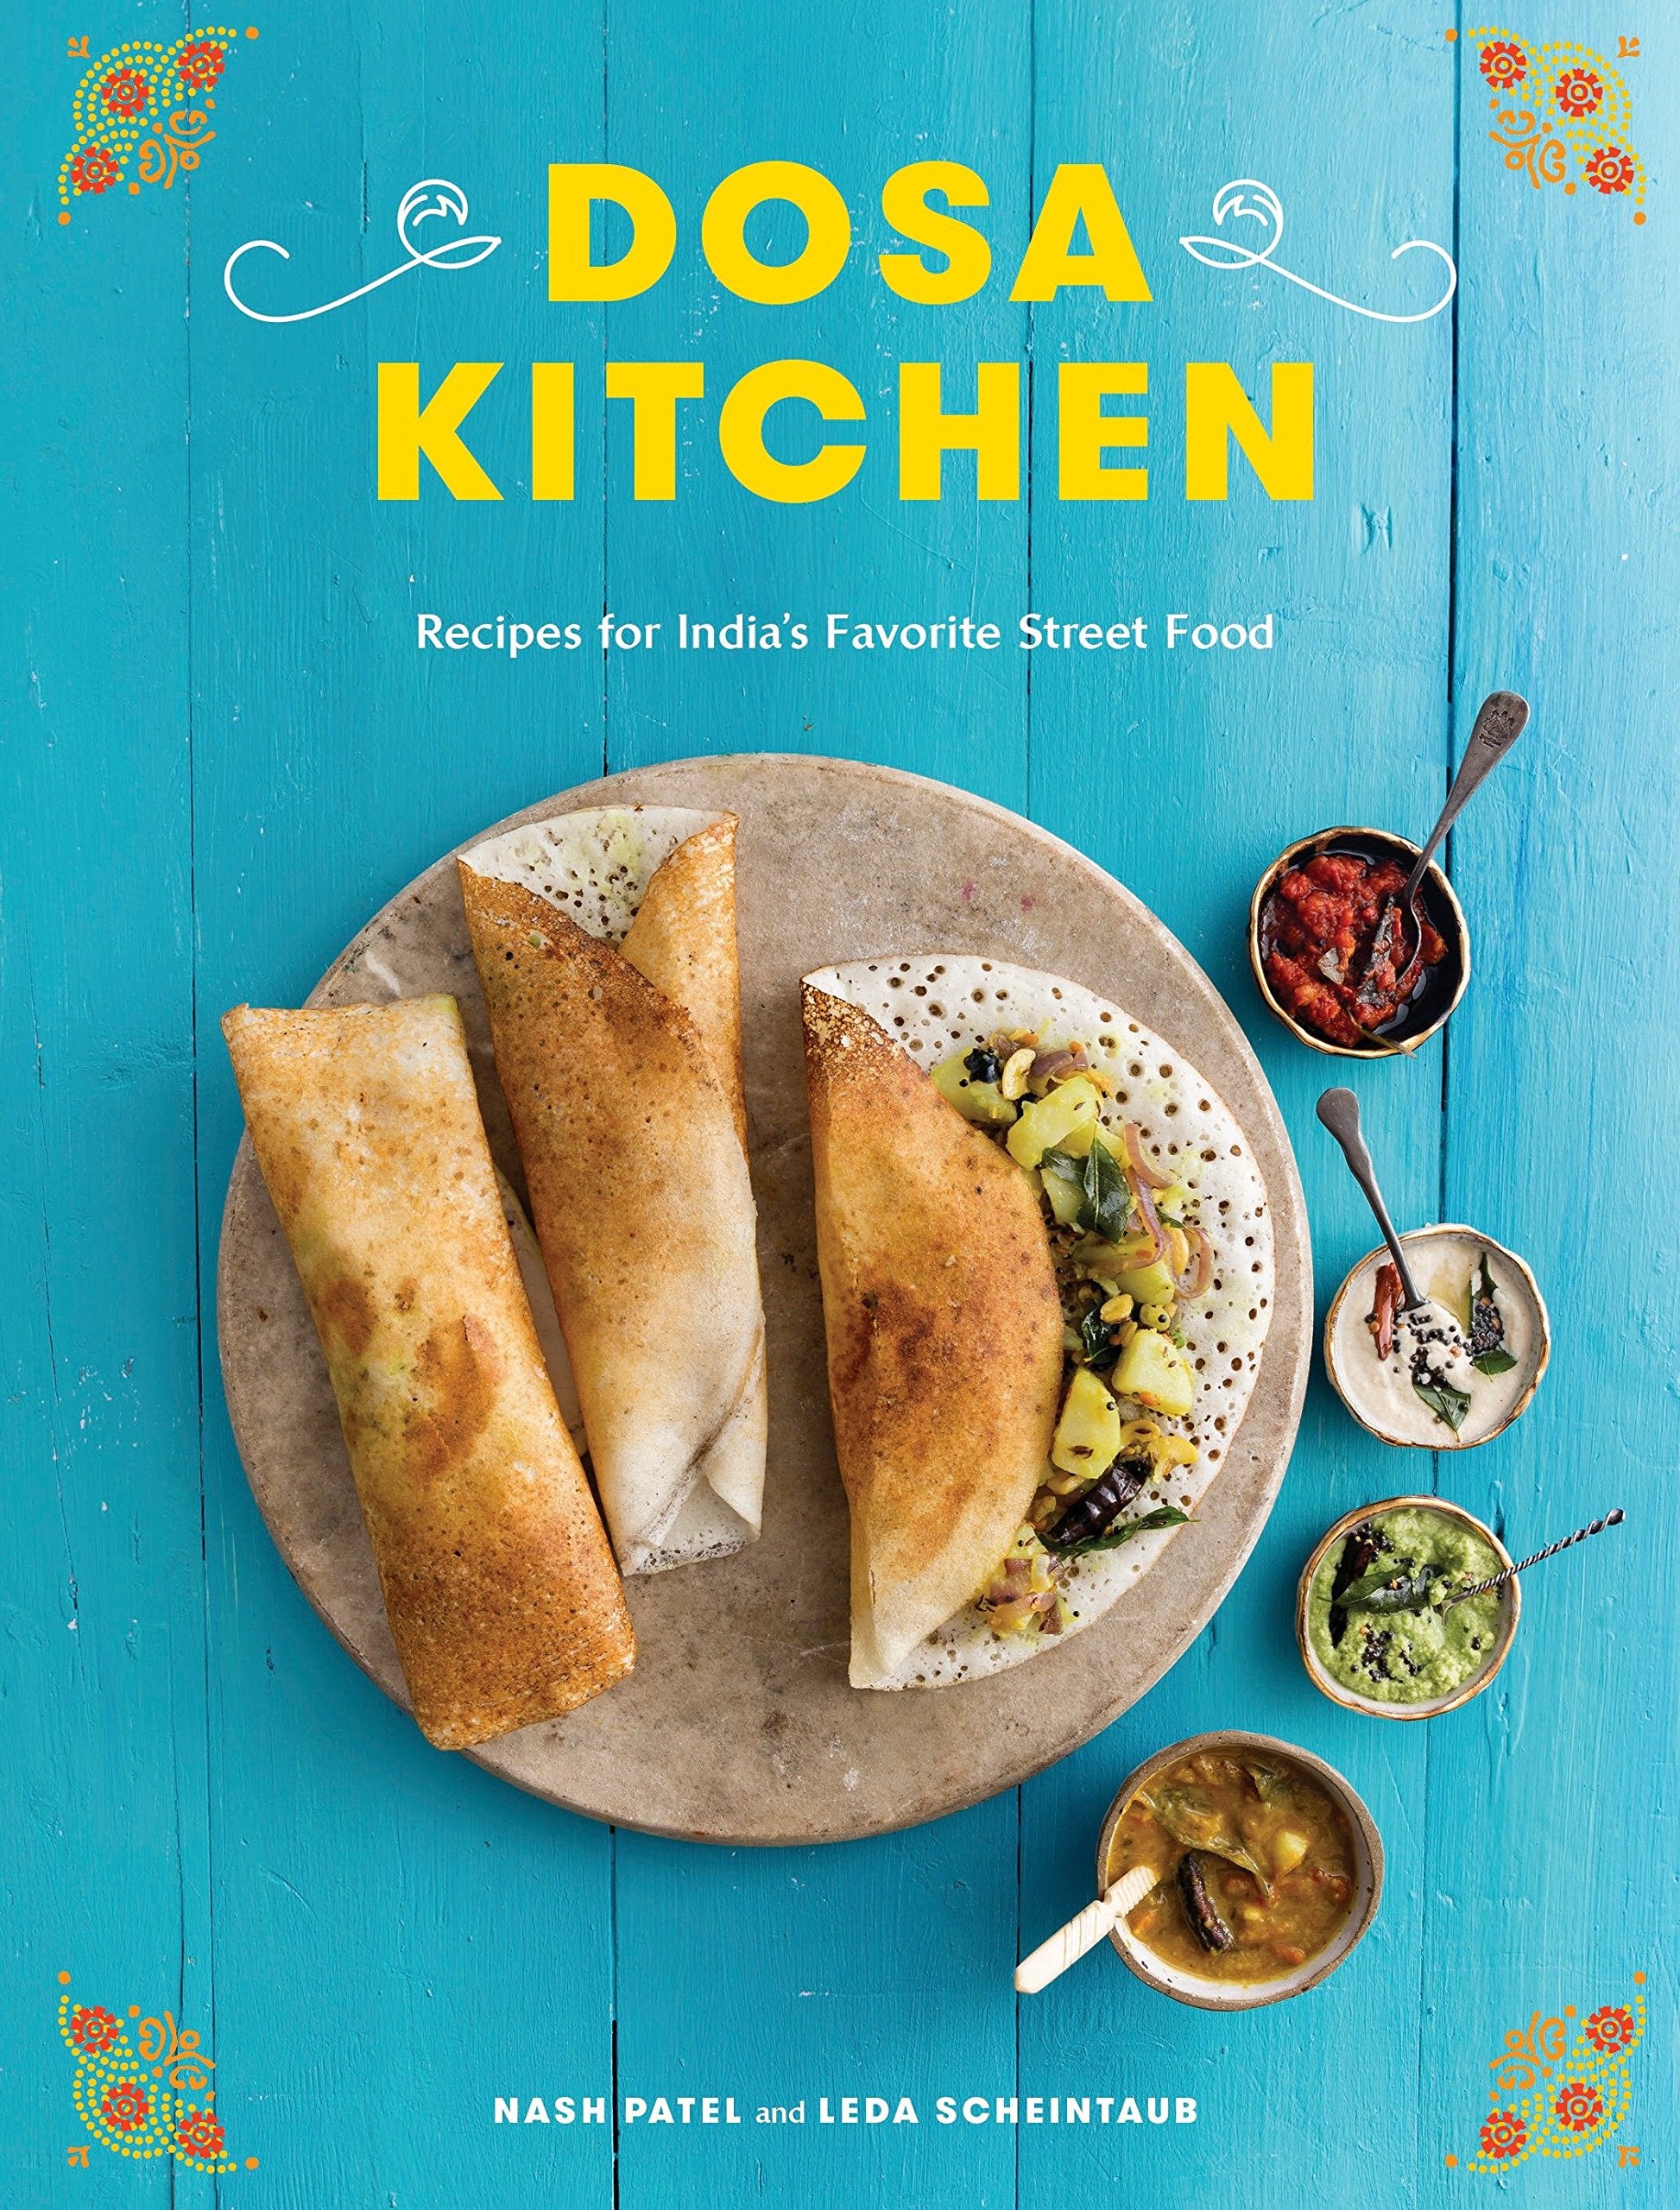 Dosa Kitchen: Recipes for India's Favorite Street Food (Nash Patel, Leda Scheintaub)